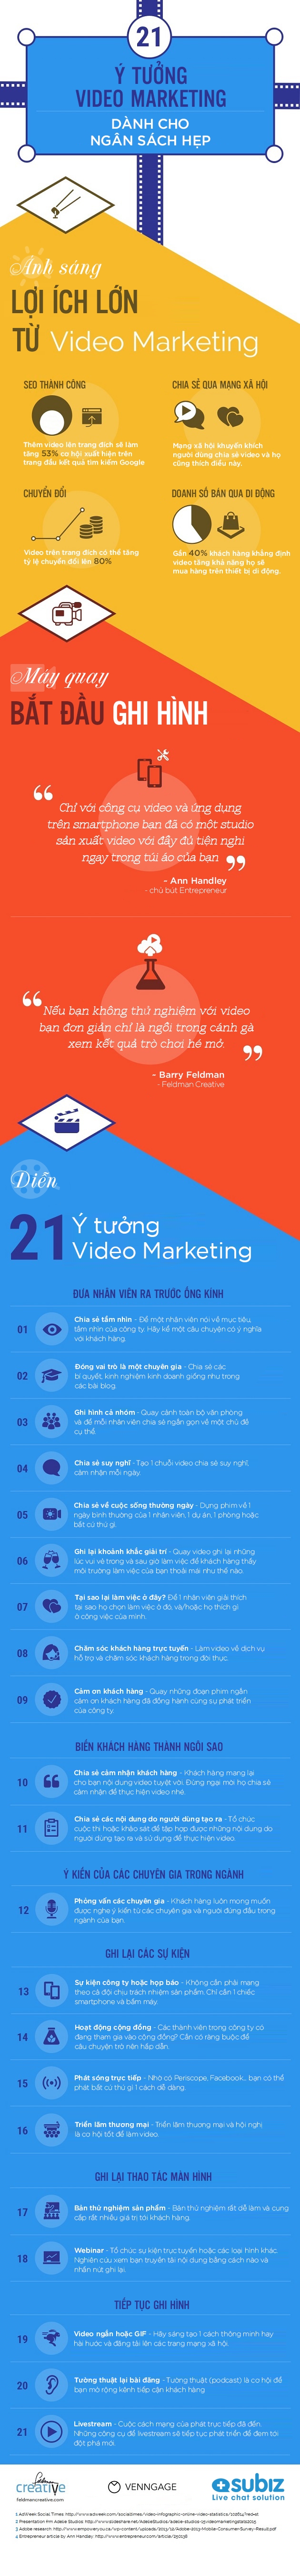 21 ý tưởng Video Marketing với nguồn kinh phí hạn hẹp 